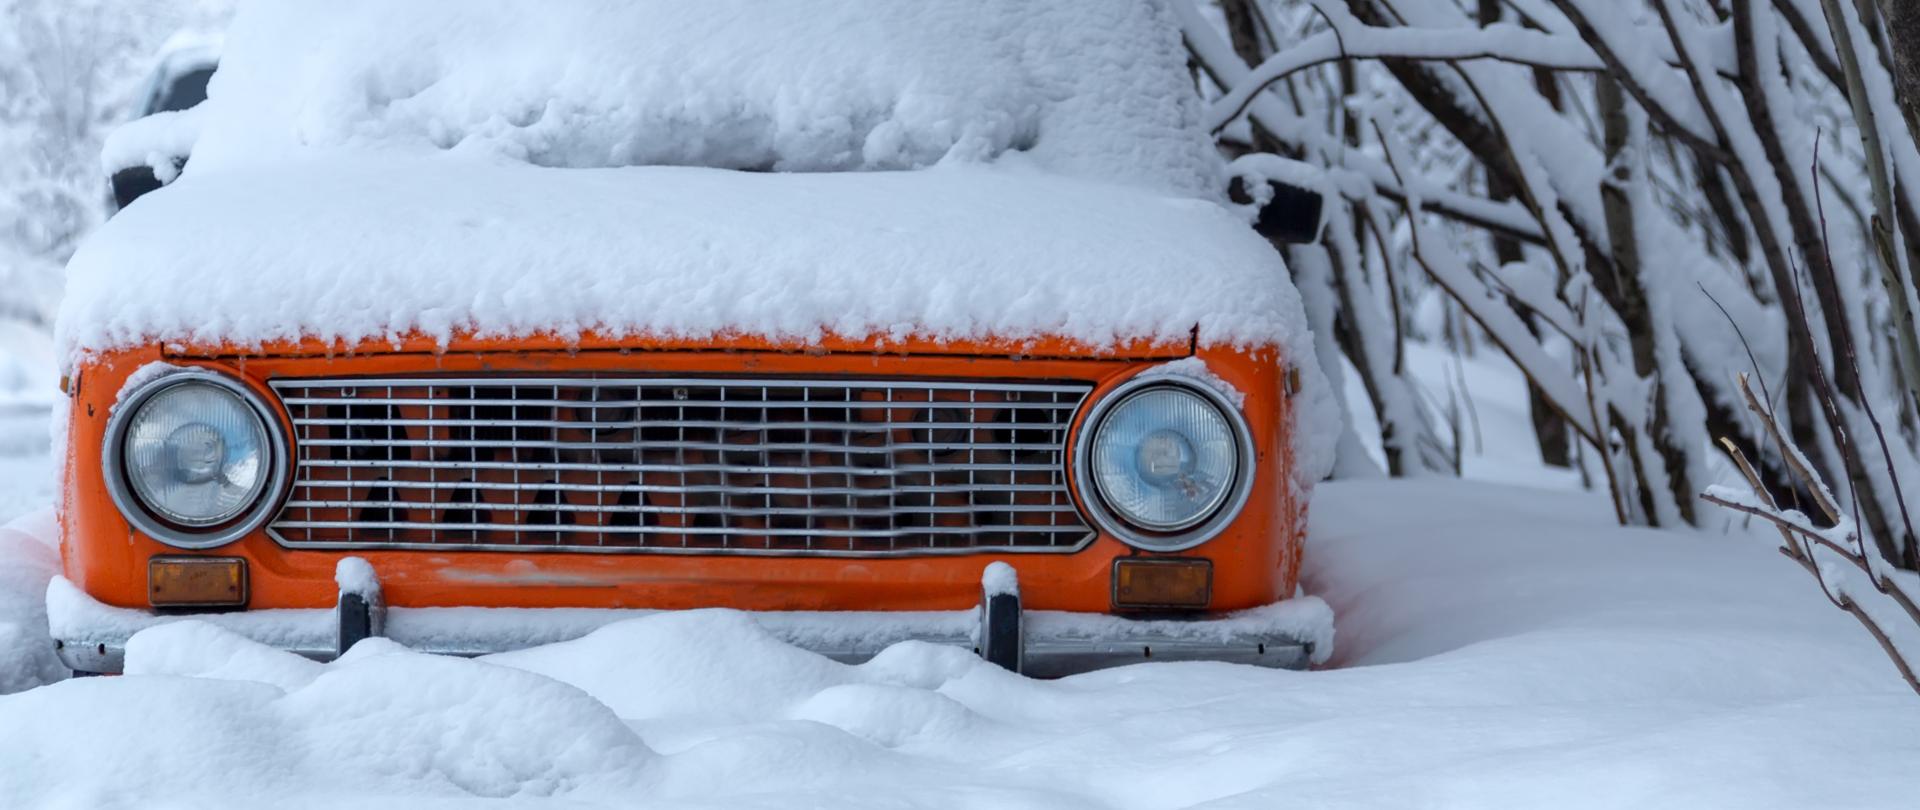 Pomarańczowy samochód stojący i zasypany śniegiem - widoczny jest tylko jego przód.